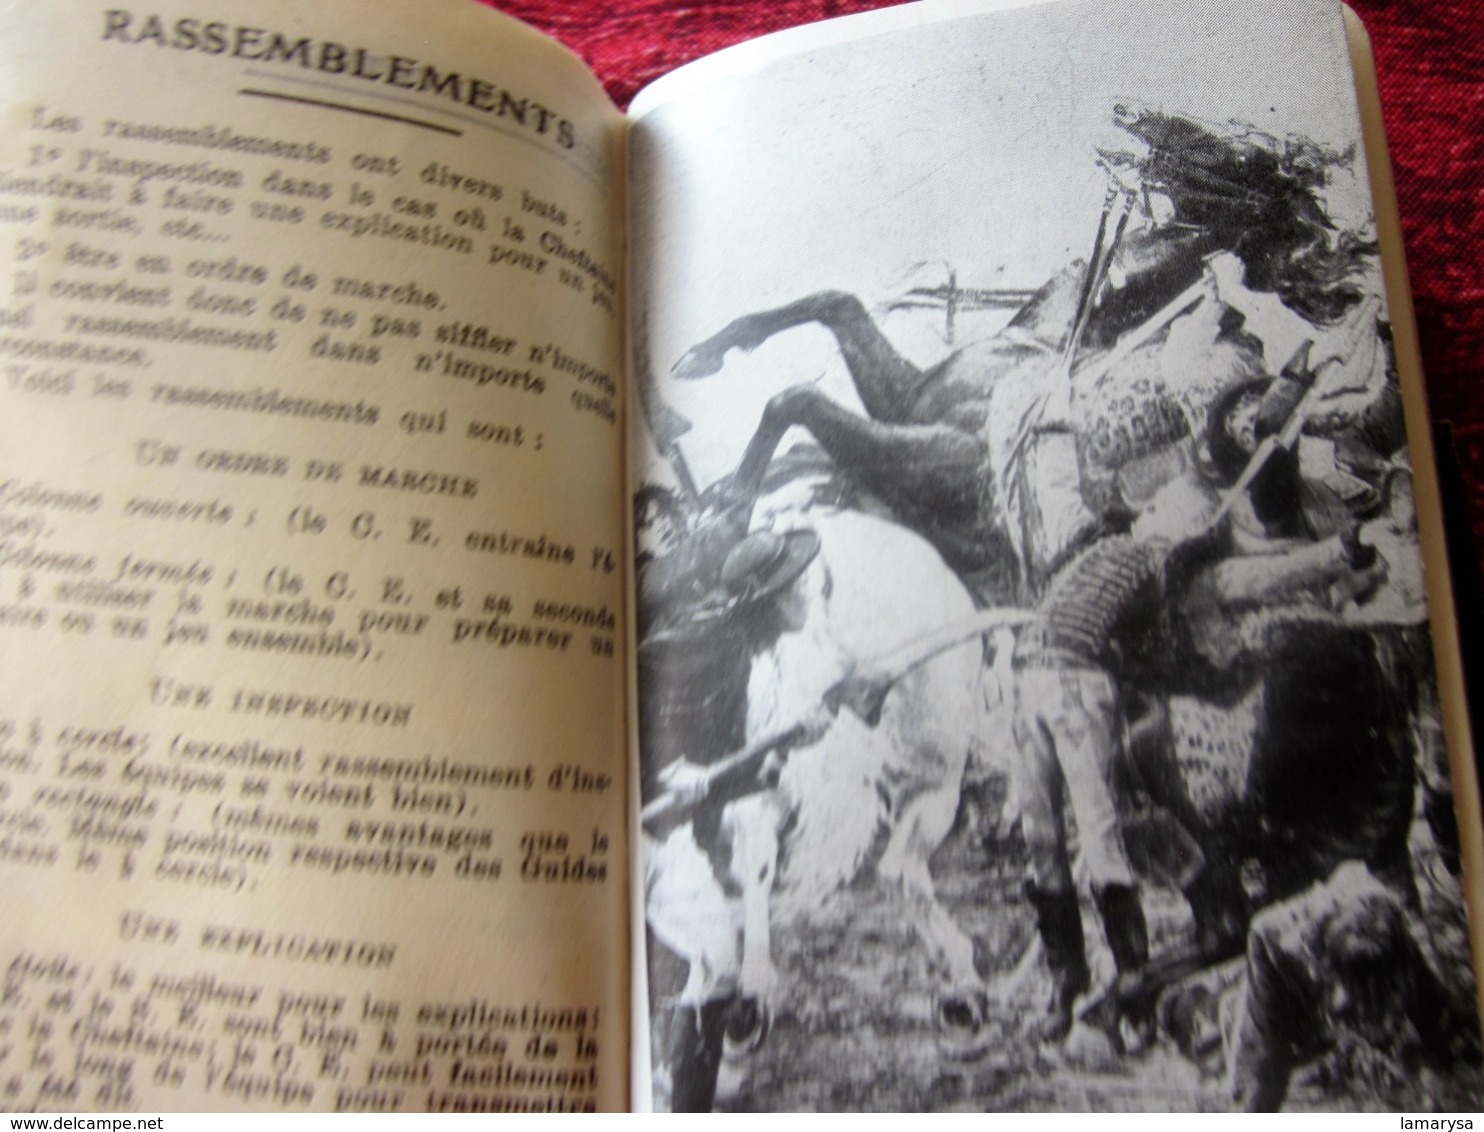 1937 AGENDA PALBA GUIDES DE FRANCE-LOI SCOUTE-PHOTOS-NOTES-JAMBOREE SCOUT INTERNATIONAL CONÇU SPÉCIALEMENT PR SCOUTISME